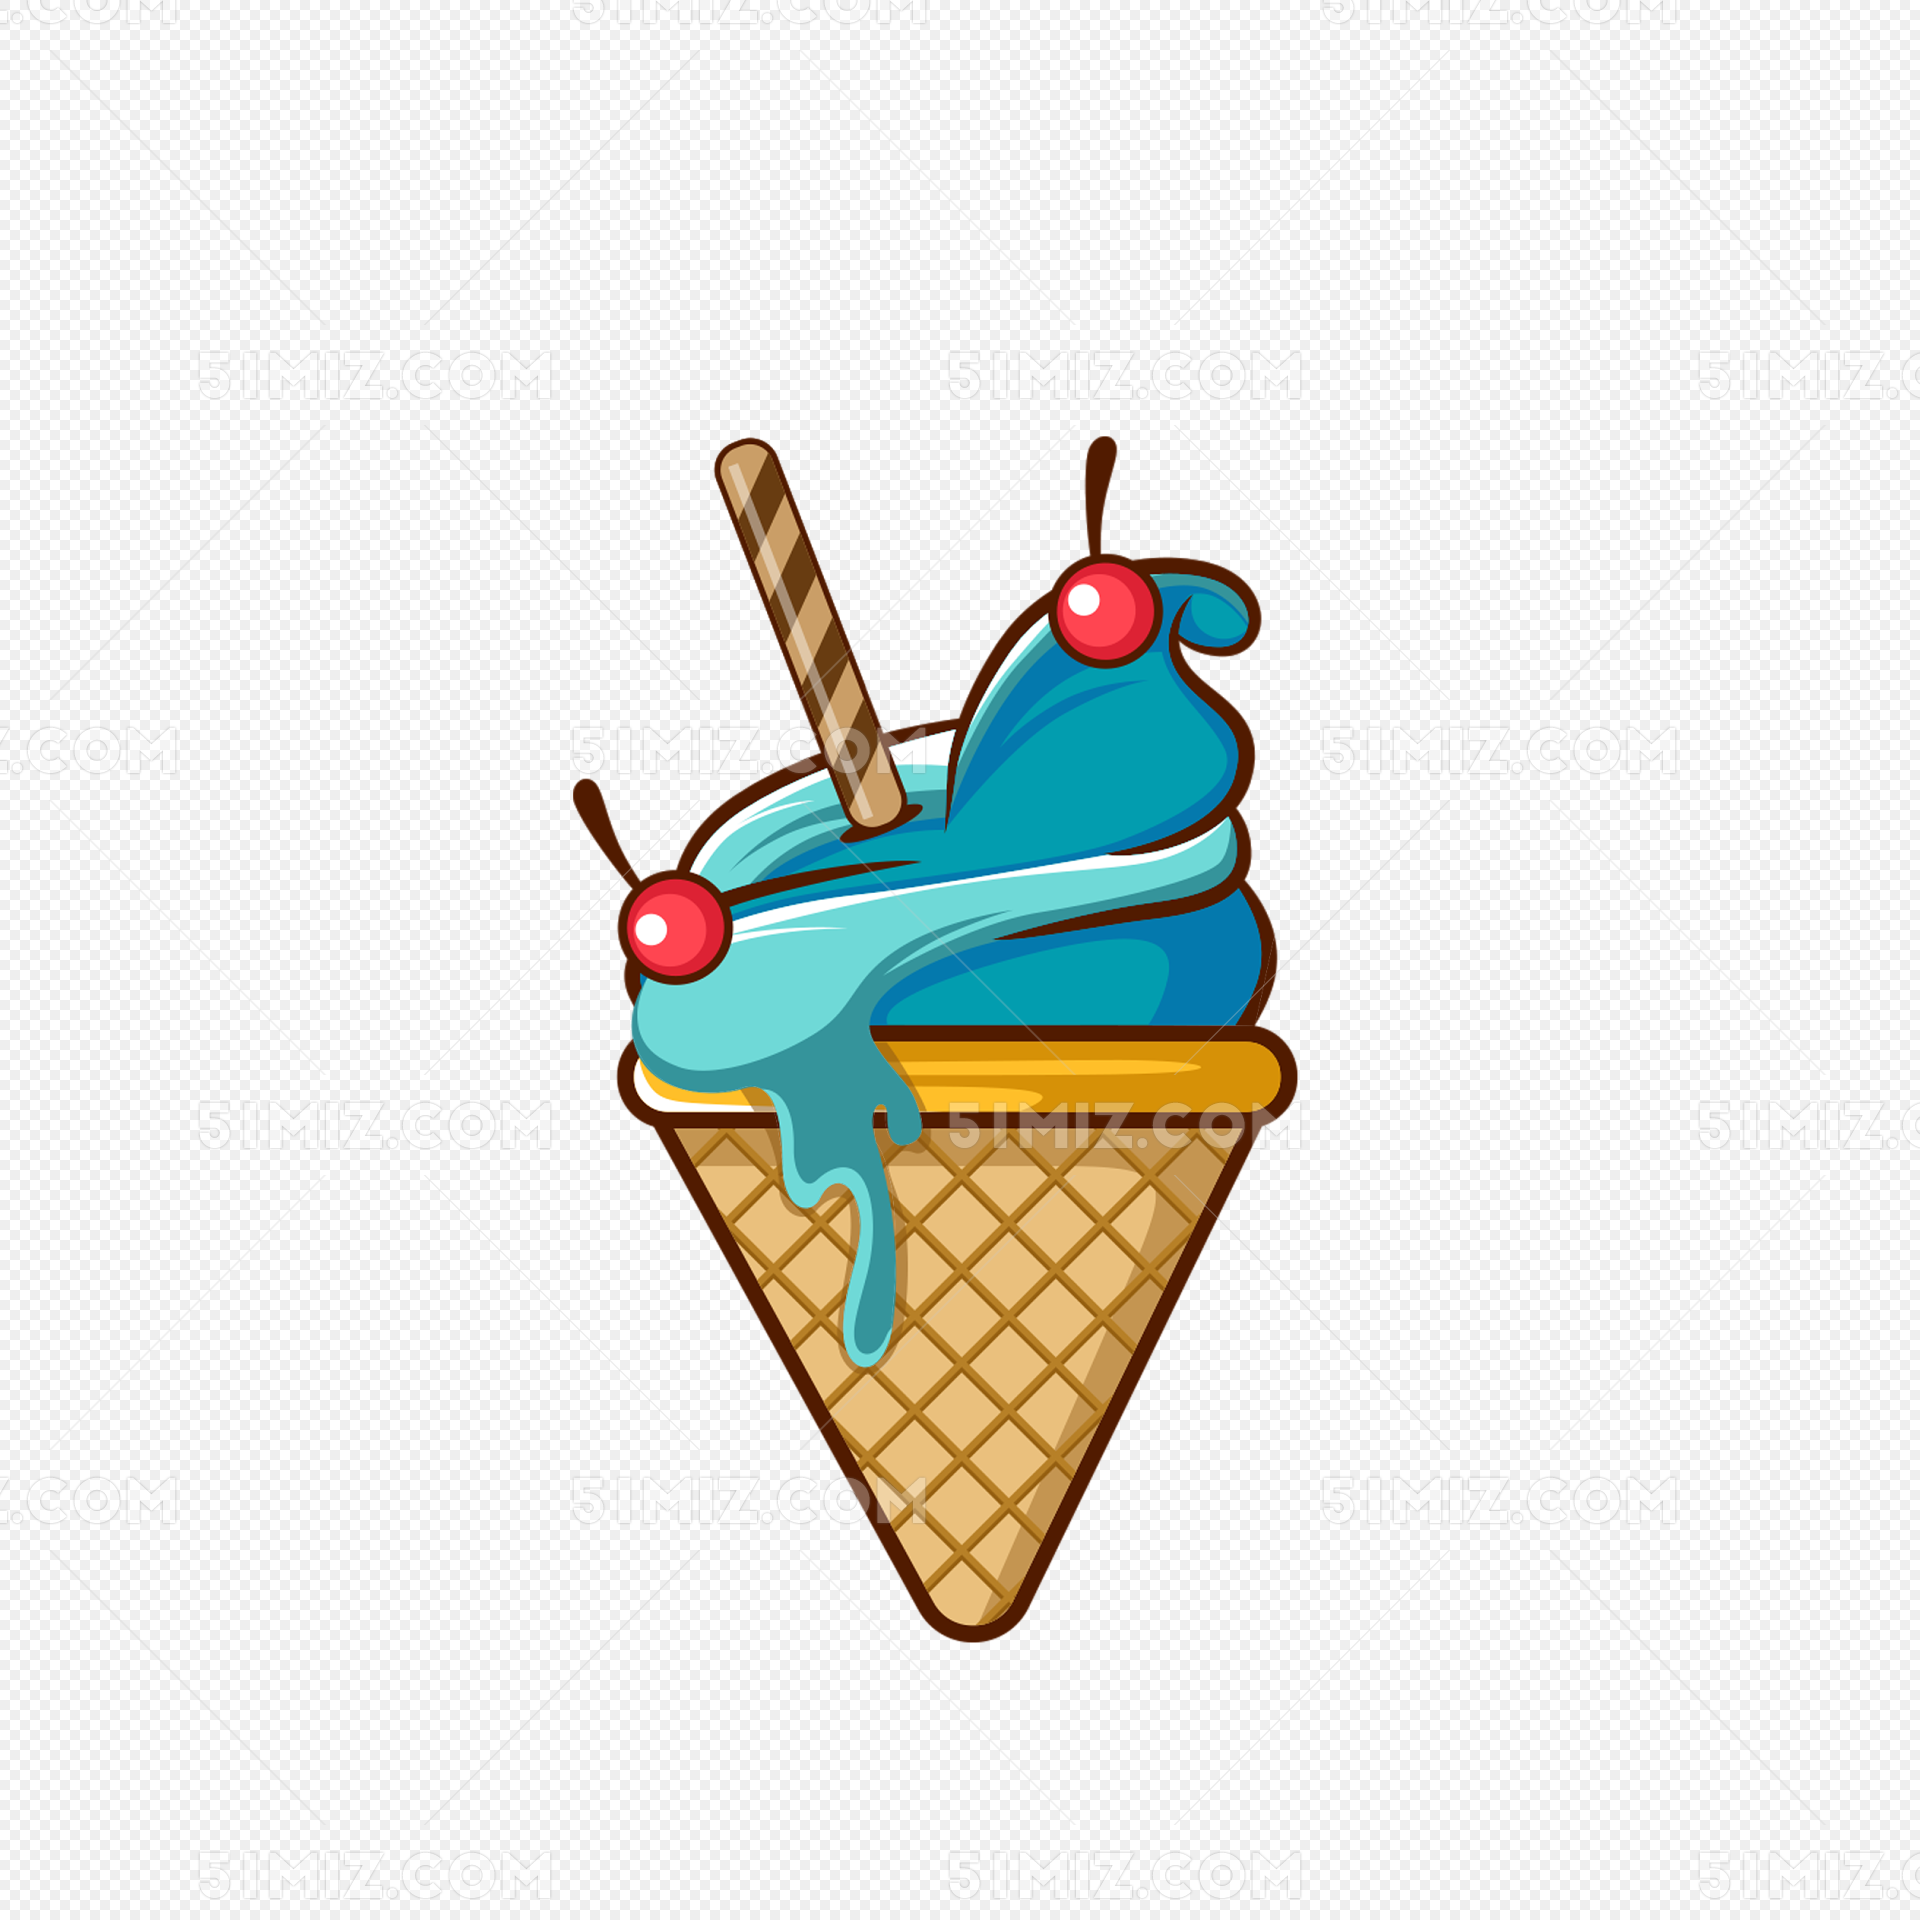 可爱冰淇淋插画矢量素材_素材公社_tooopen.com